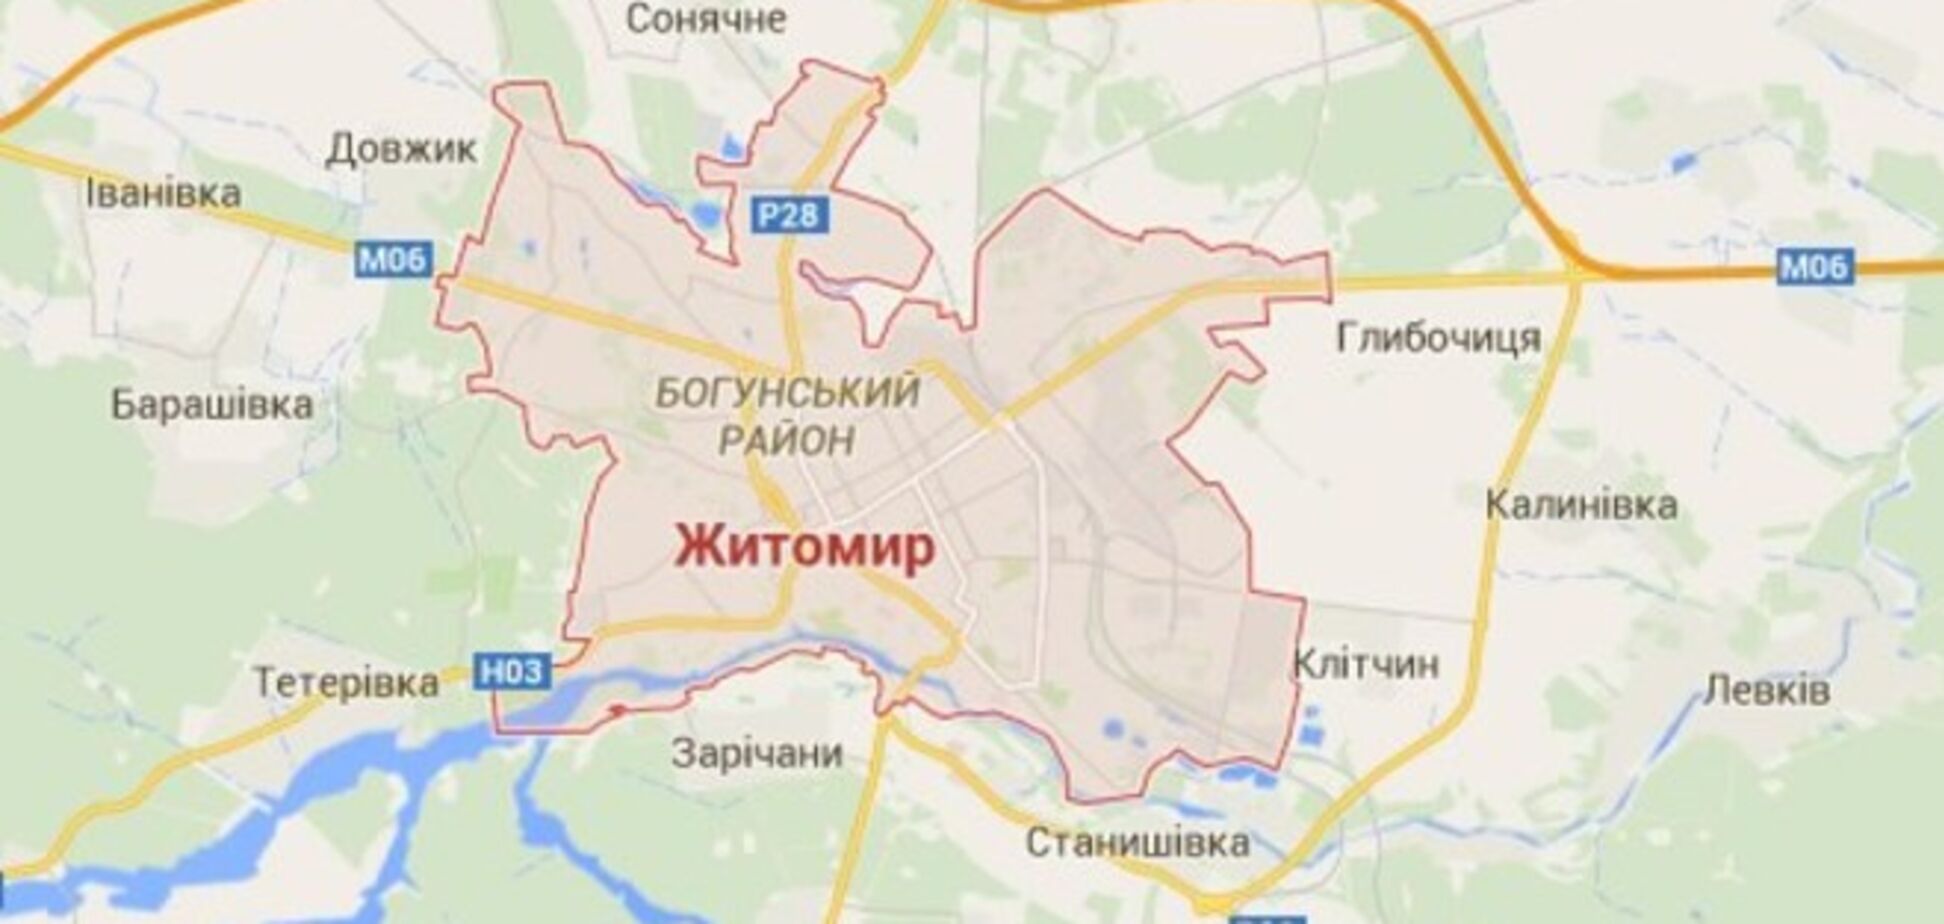 В Житомире неизвестные взорвали два автомобиля работников налоговой